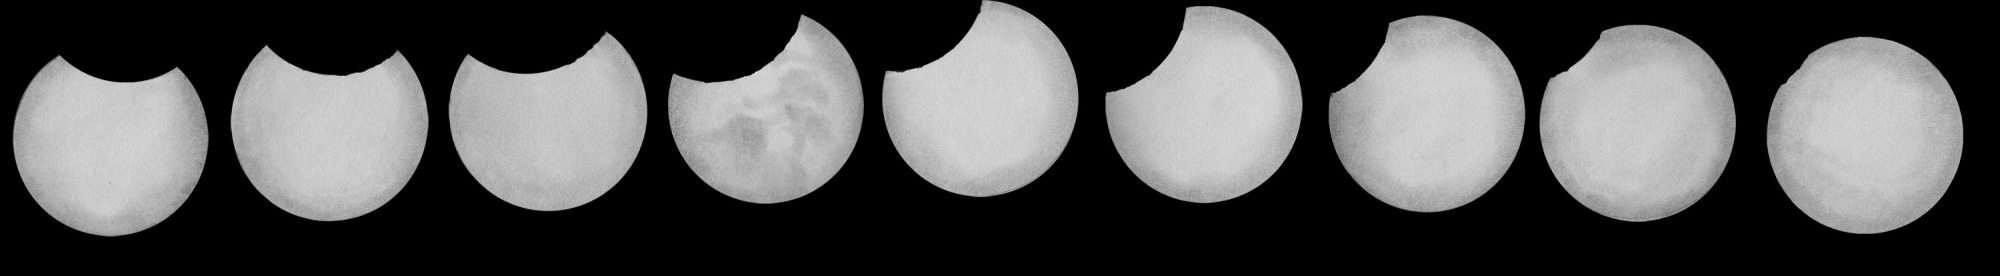 eclipse_21_b.thumb.jpg.1bf0c11a41e5a09a05de8f46cfa9a1a0.jpg